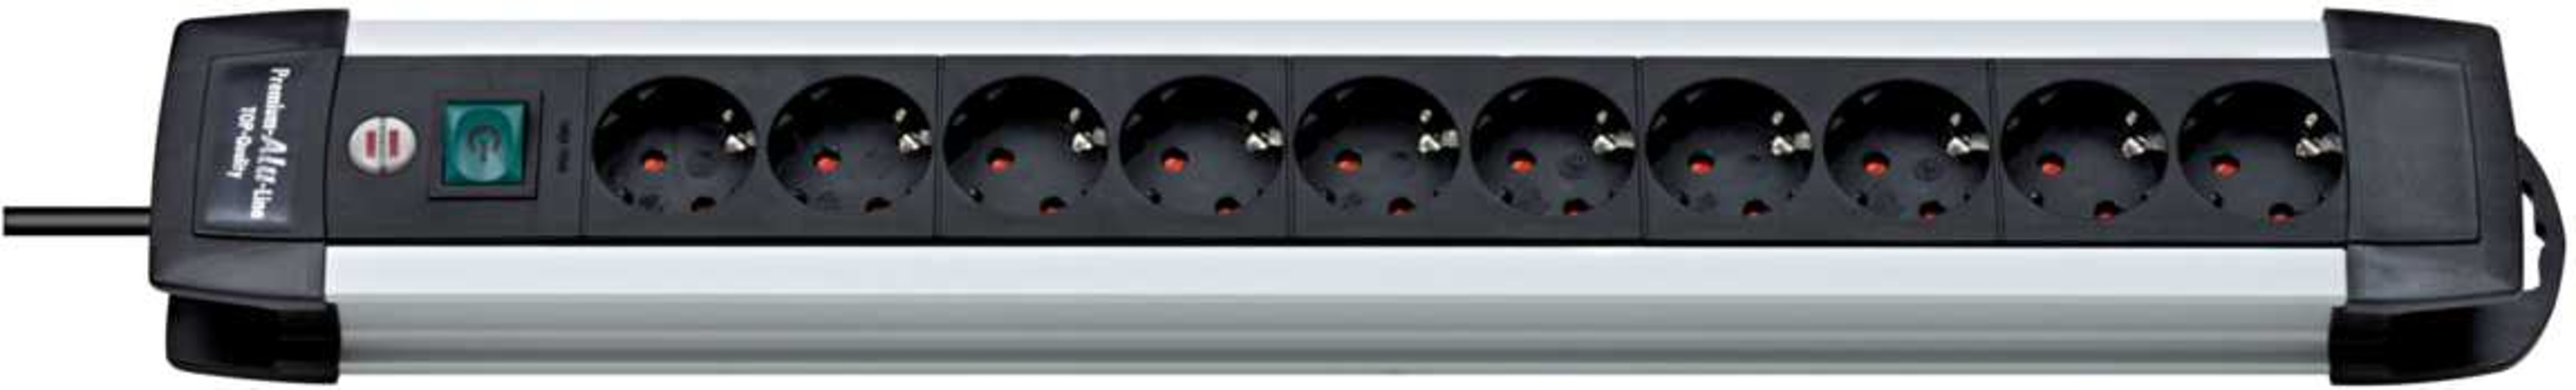 Hochwertige Steckdosenleiste von Brennenstuhl Premium Alu Line mit 10 Steckdosen und 3m Kabel in schwarz